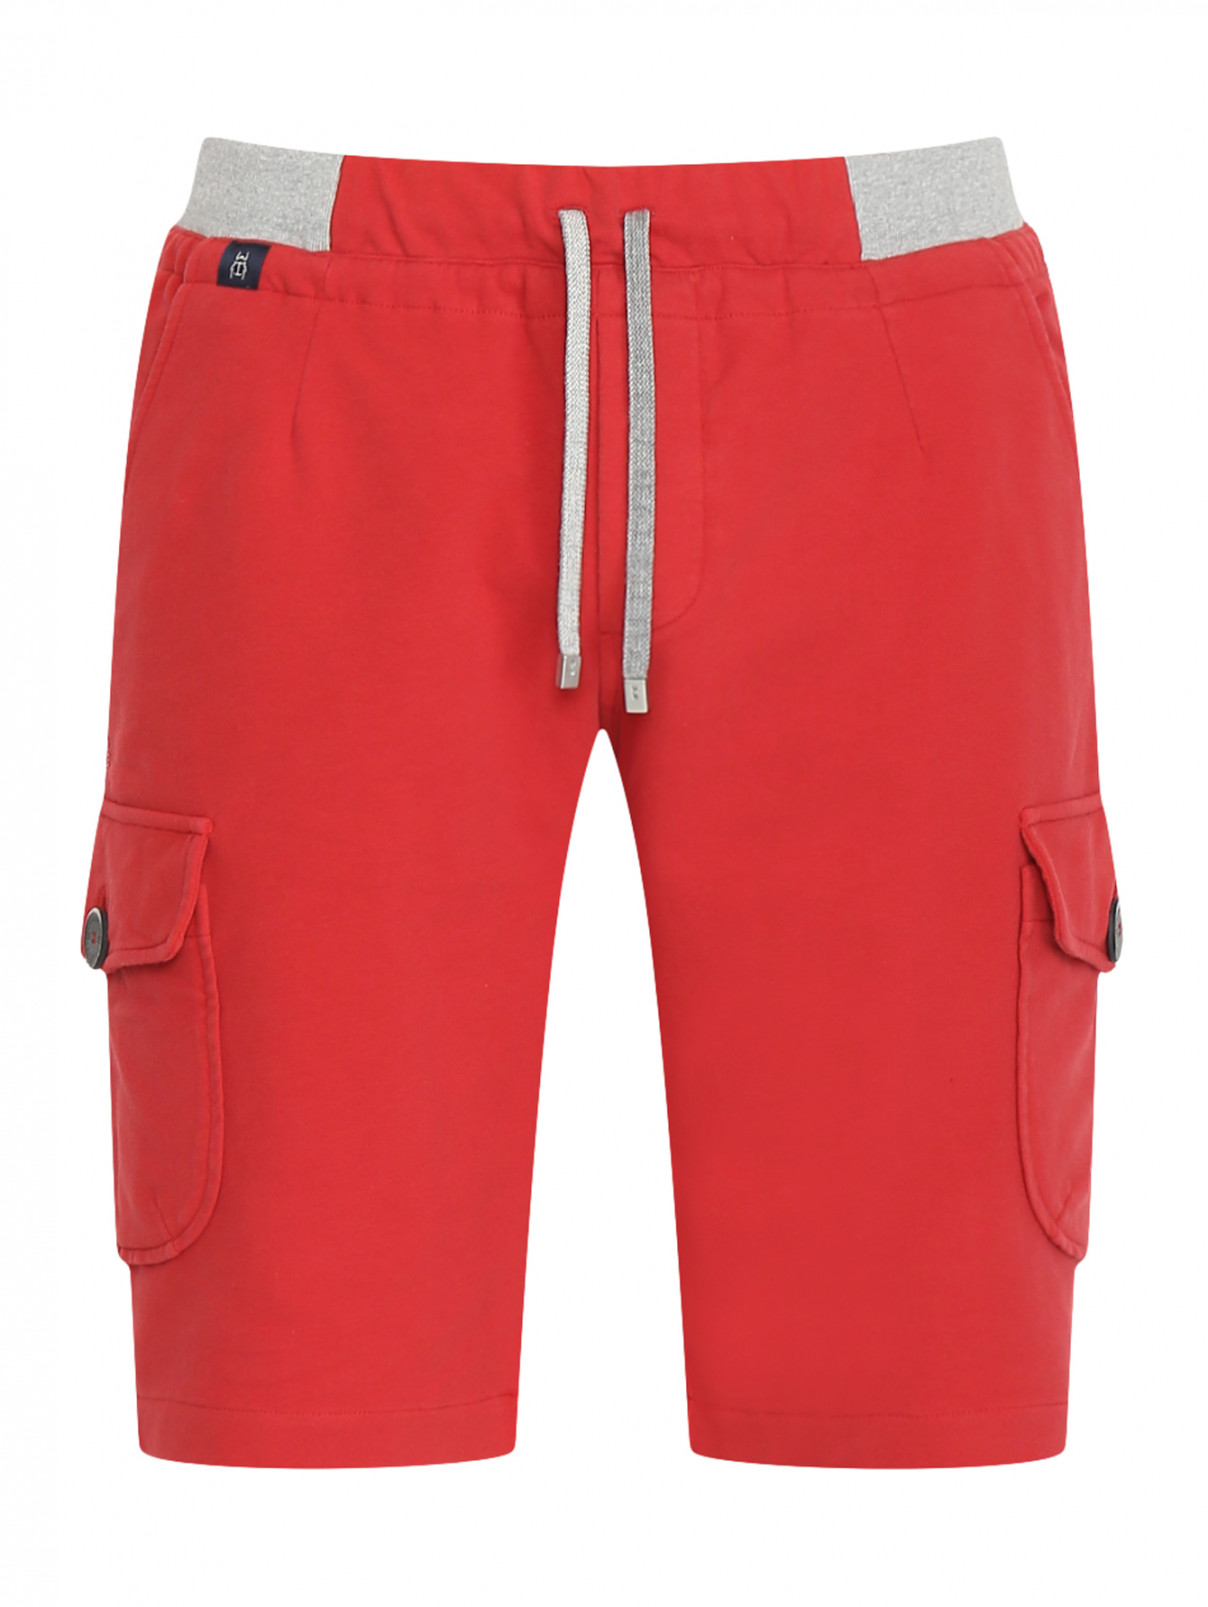 Шорты из хлопка с накладными карманами Capobianco  –  Общий вид  – Цвет:  Красный